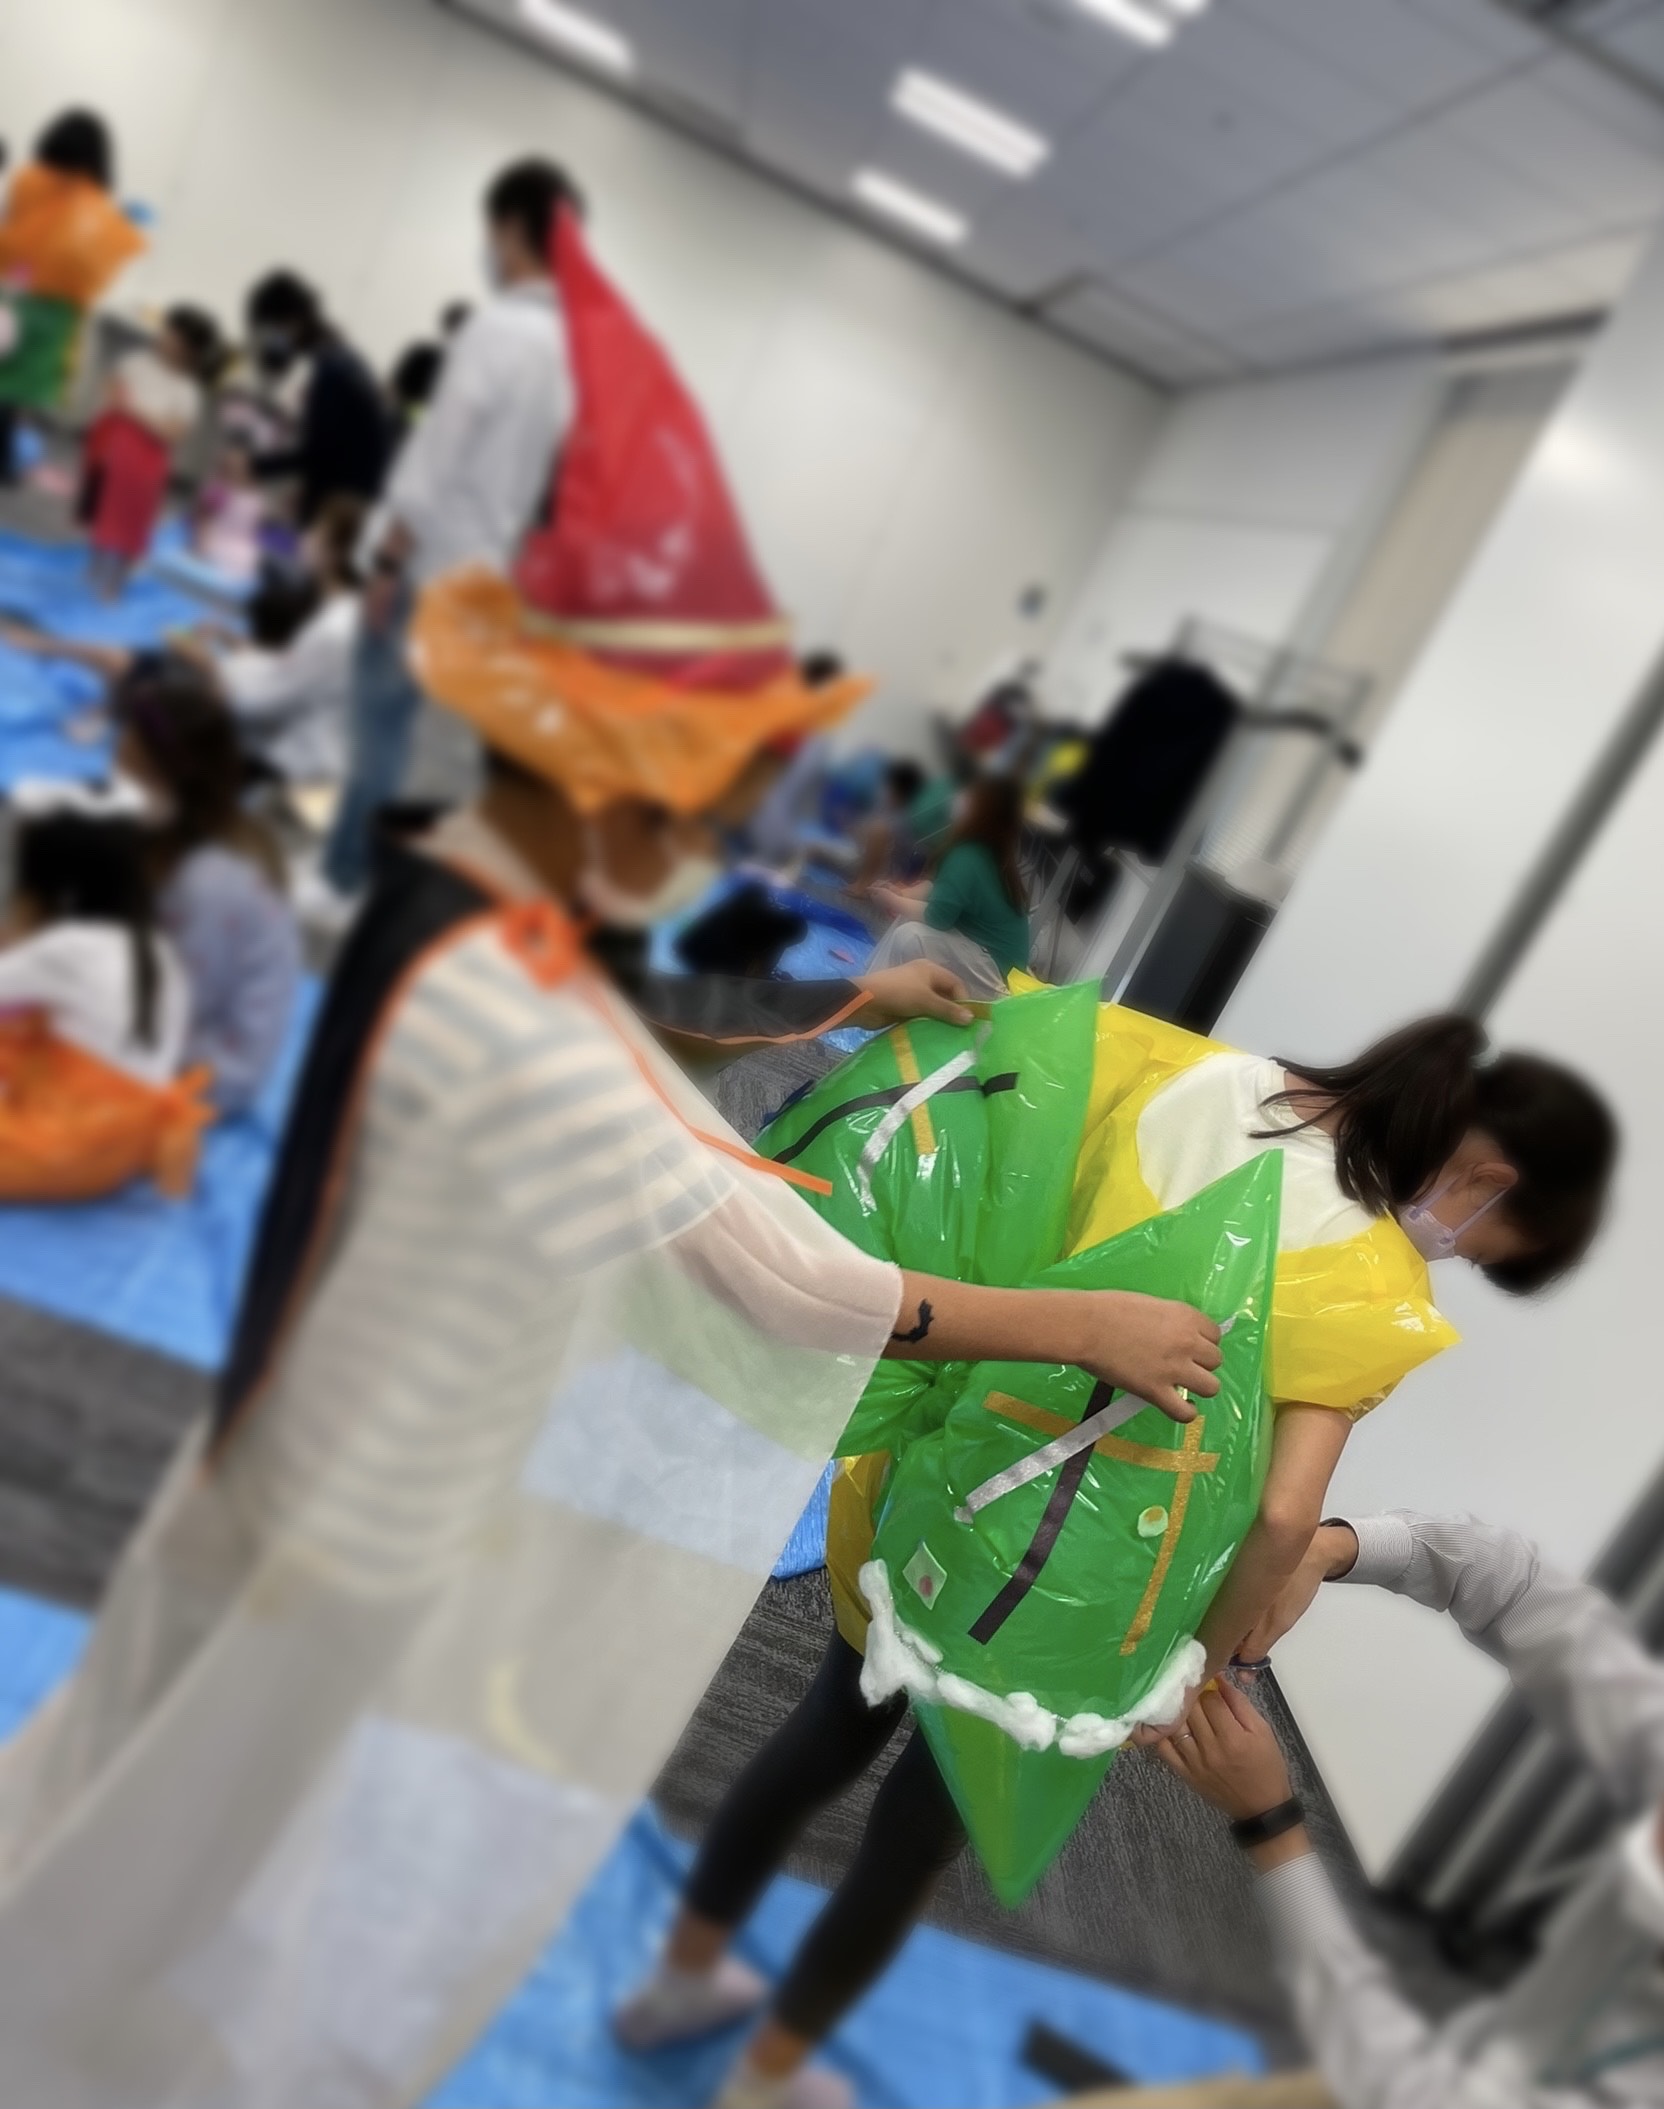 【活動報告】日本ヒューレット・パッカード合同会社様のファミリーイベント